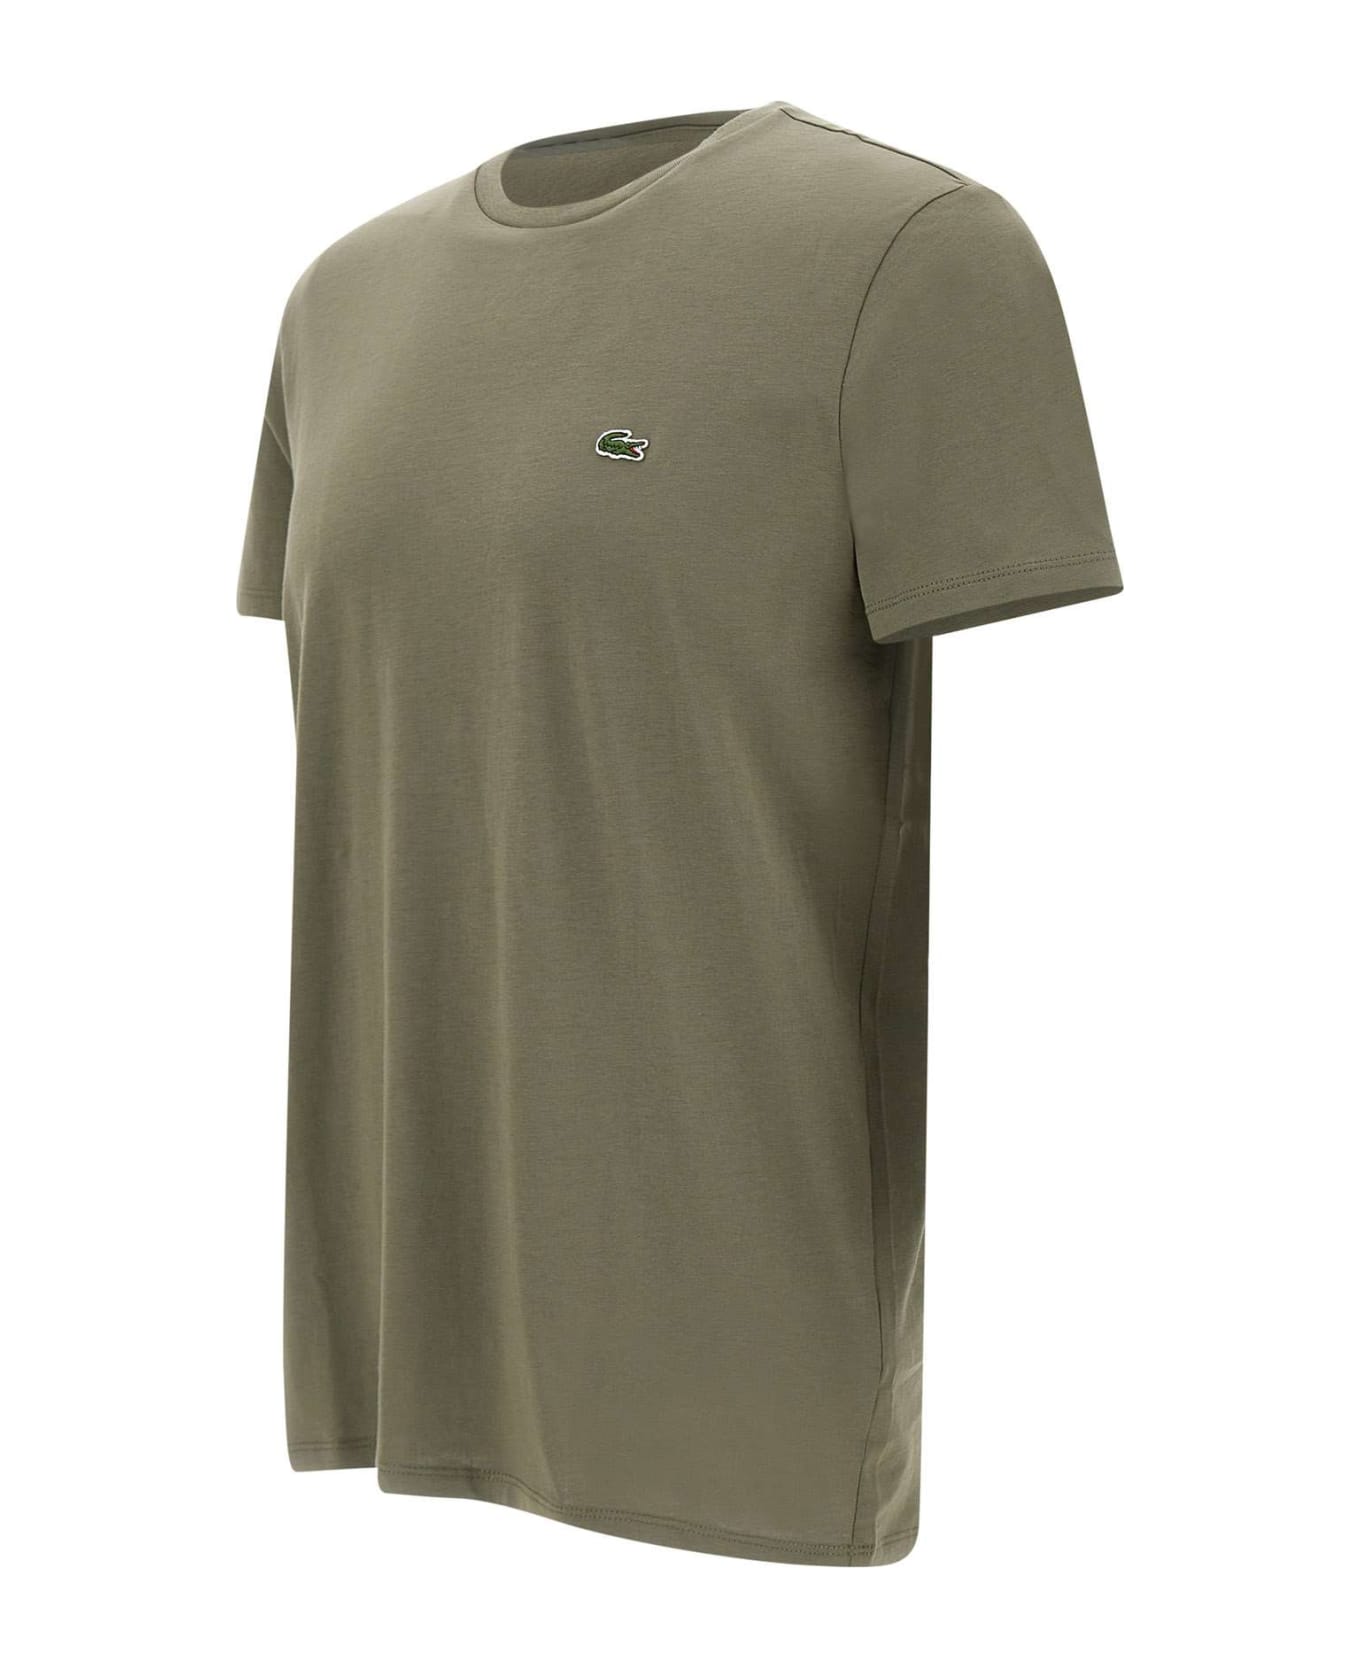 Lacoste Cotton T-shirt - Khaki